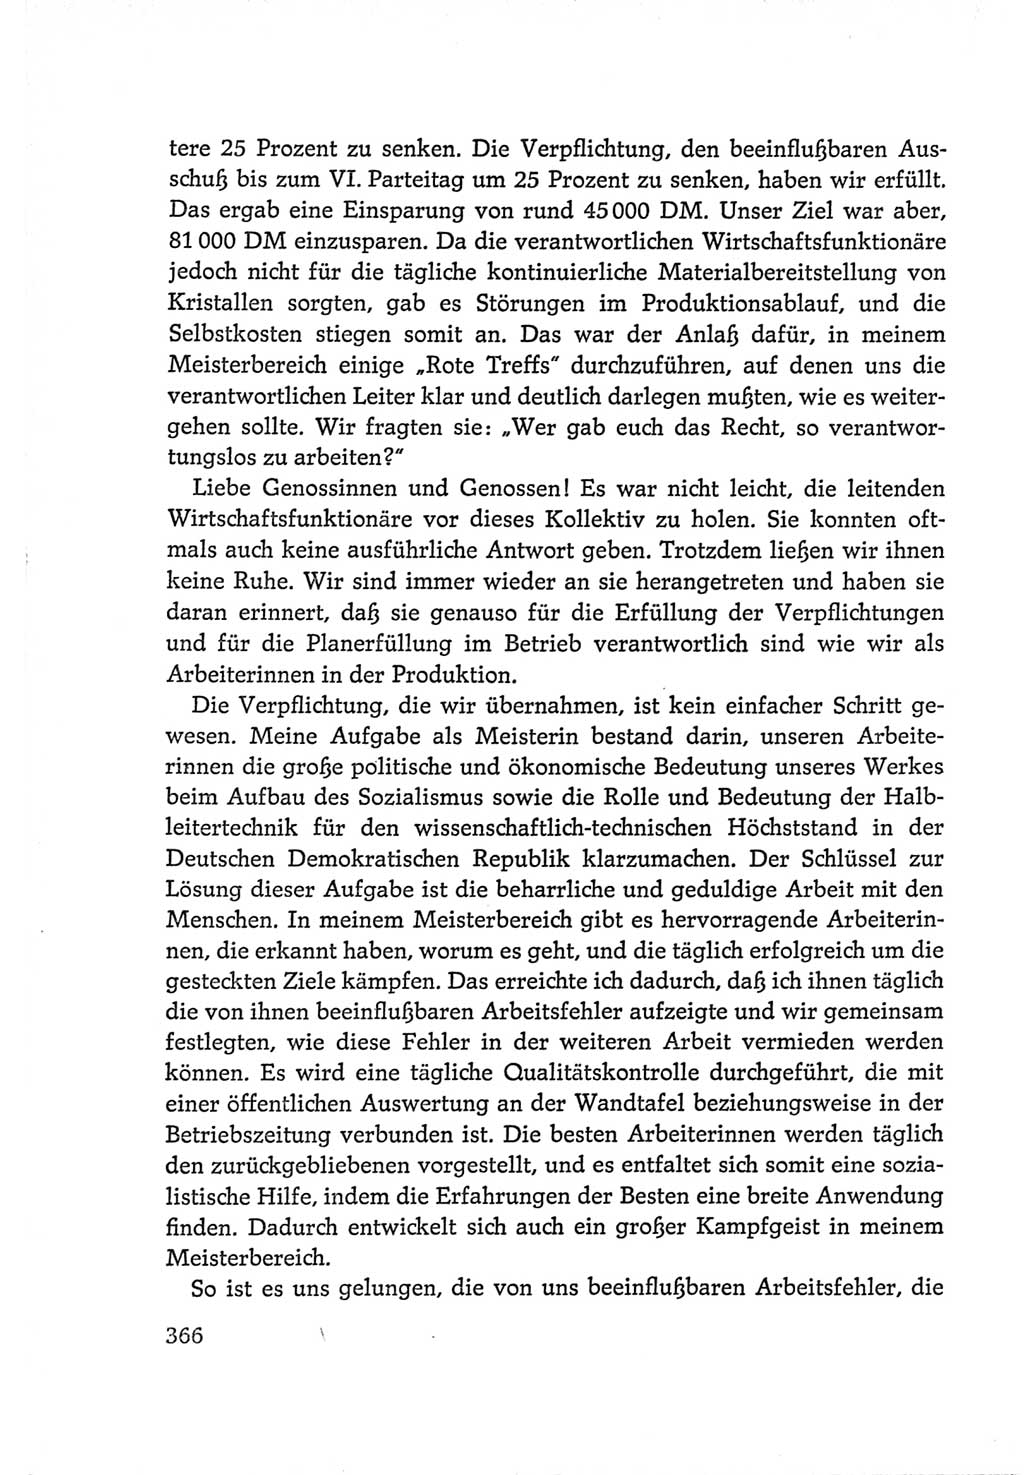 Protokoll der Verhandlungen des Ⅵ. Parteitages der Sozialistischen Einheitspartei Deutschlands (SED) [Deutsche Demokratische Republik (DDR)] 1963, Band Ⅰ, Seite 366 (Prot. Verh. Ⅵ. PT SED DDR 1963, Bd. Ⅰ, S. 366)